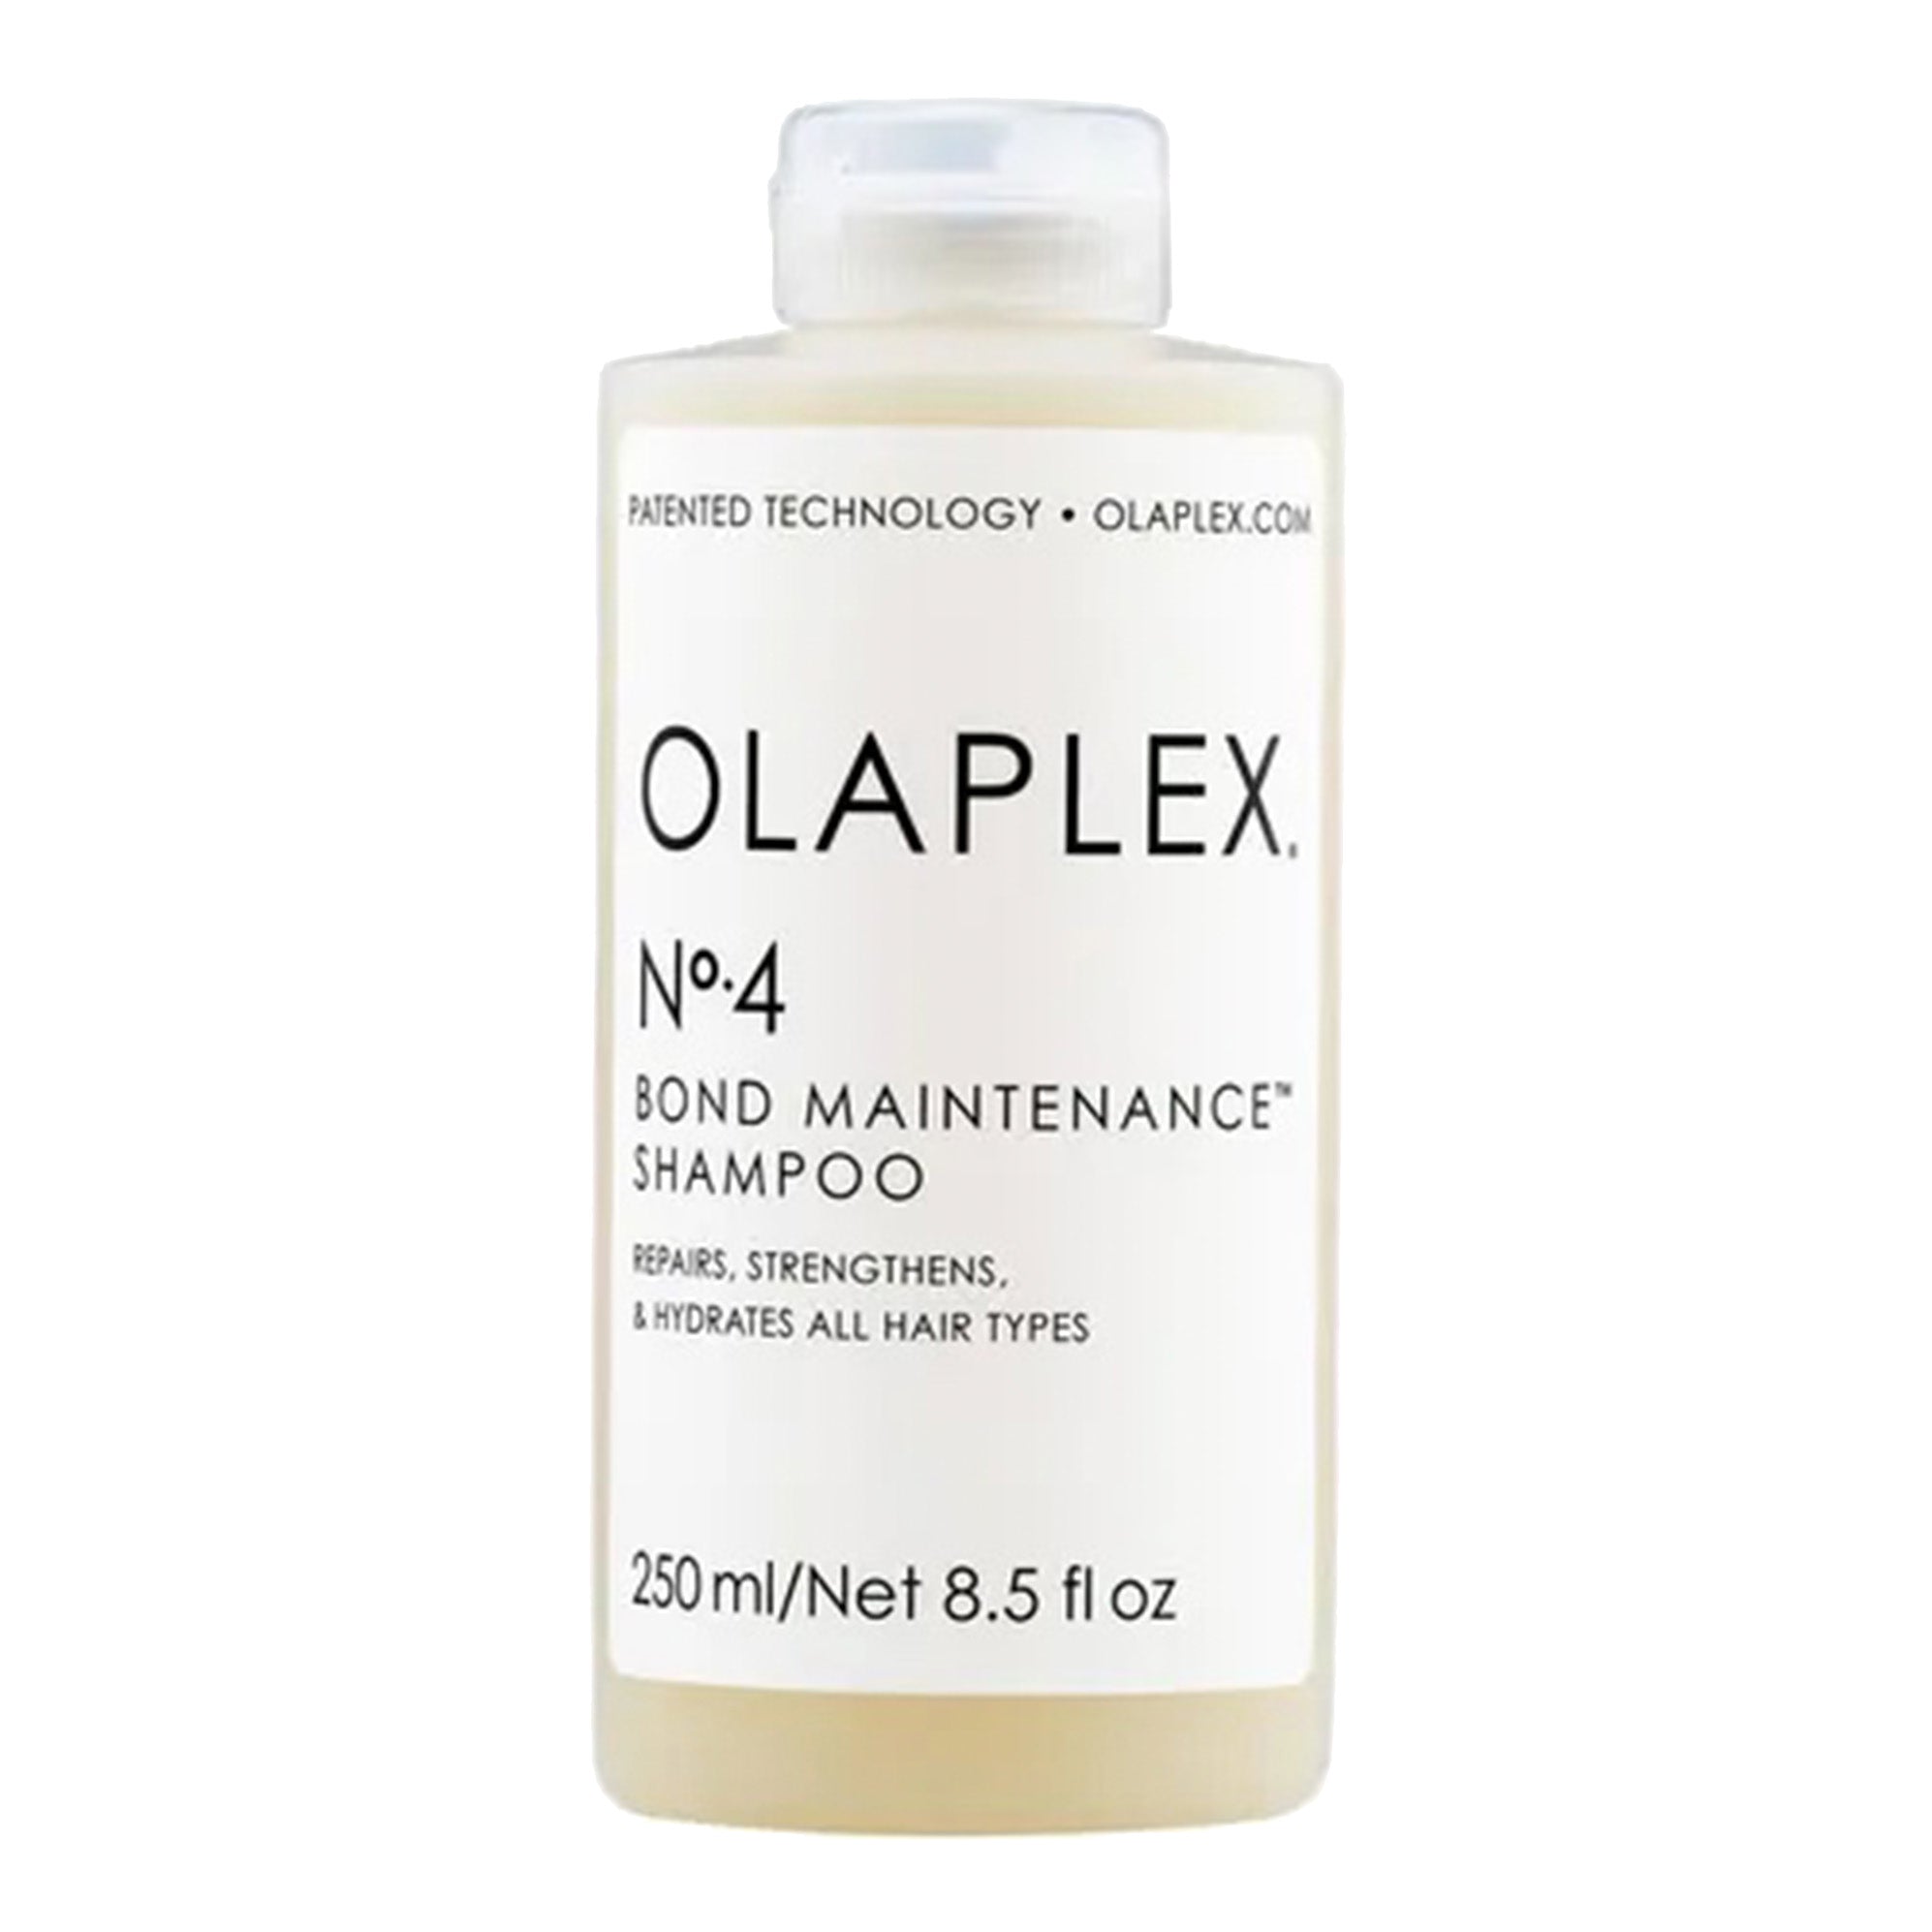 OLAPLEX N°4 Bond Maintenance shampoo 250ml | OLAPLEX N°4 Bond Maintenance shampoo 250ml